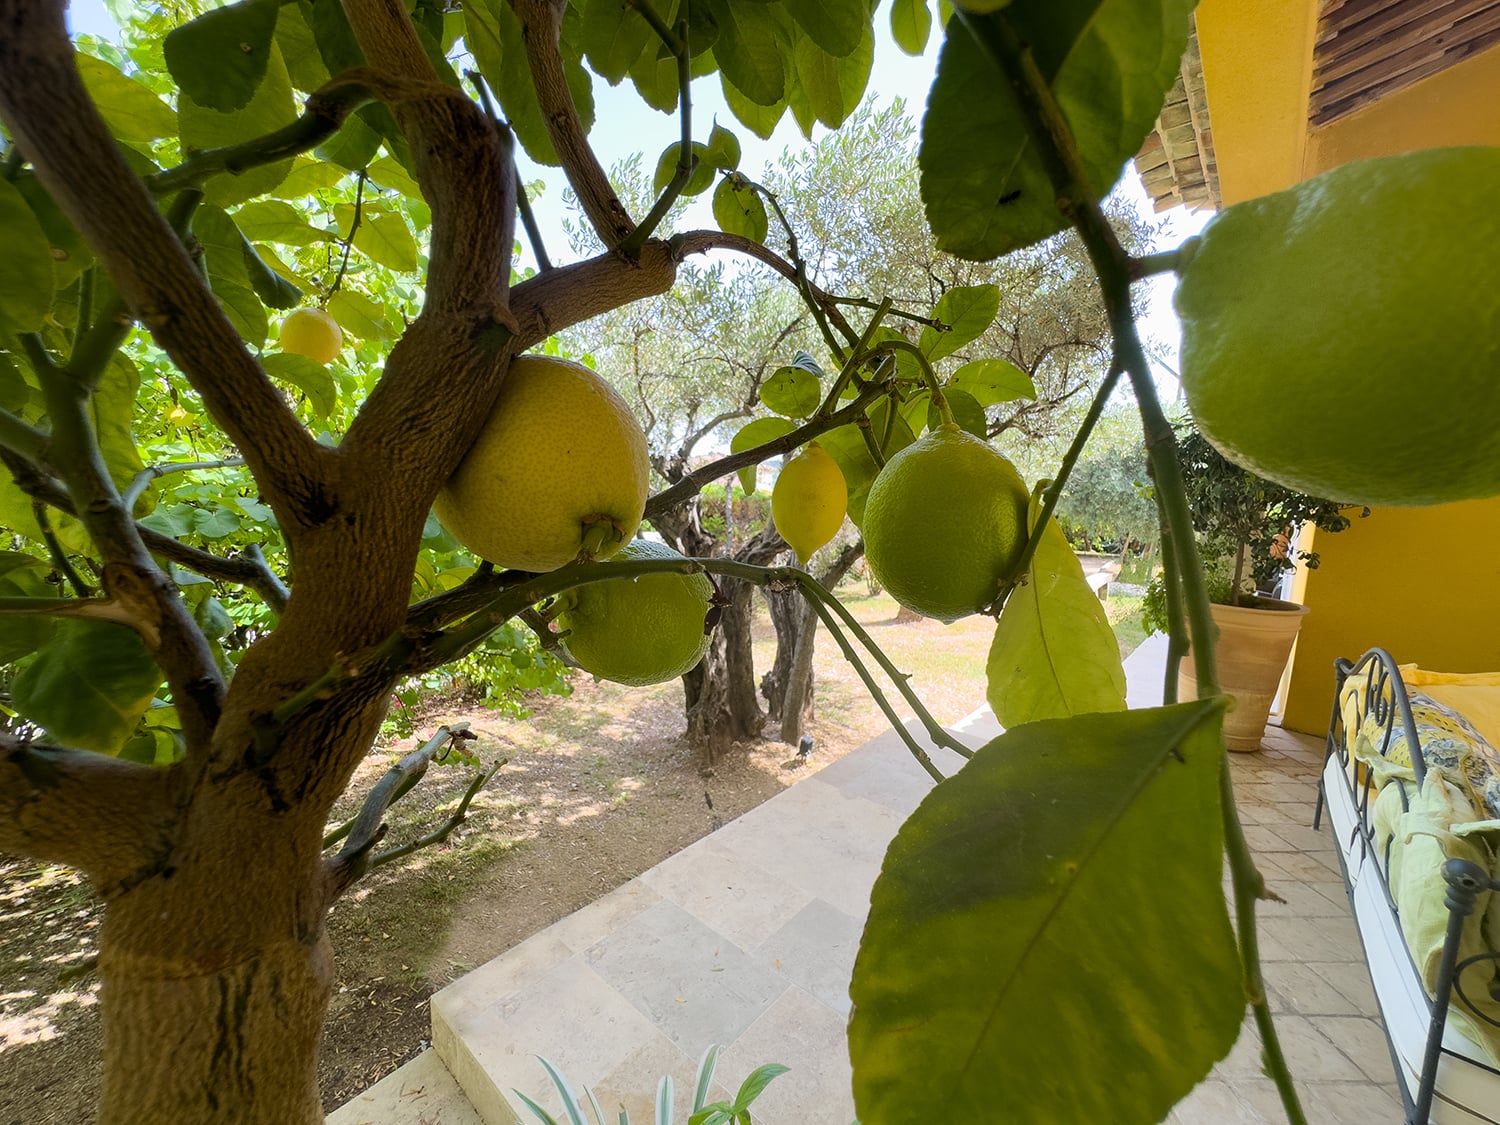 Garden fruit trees